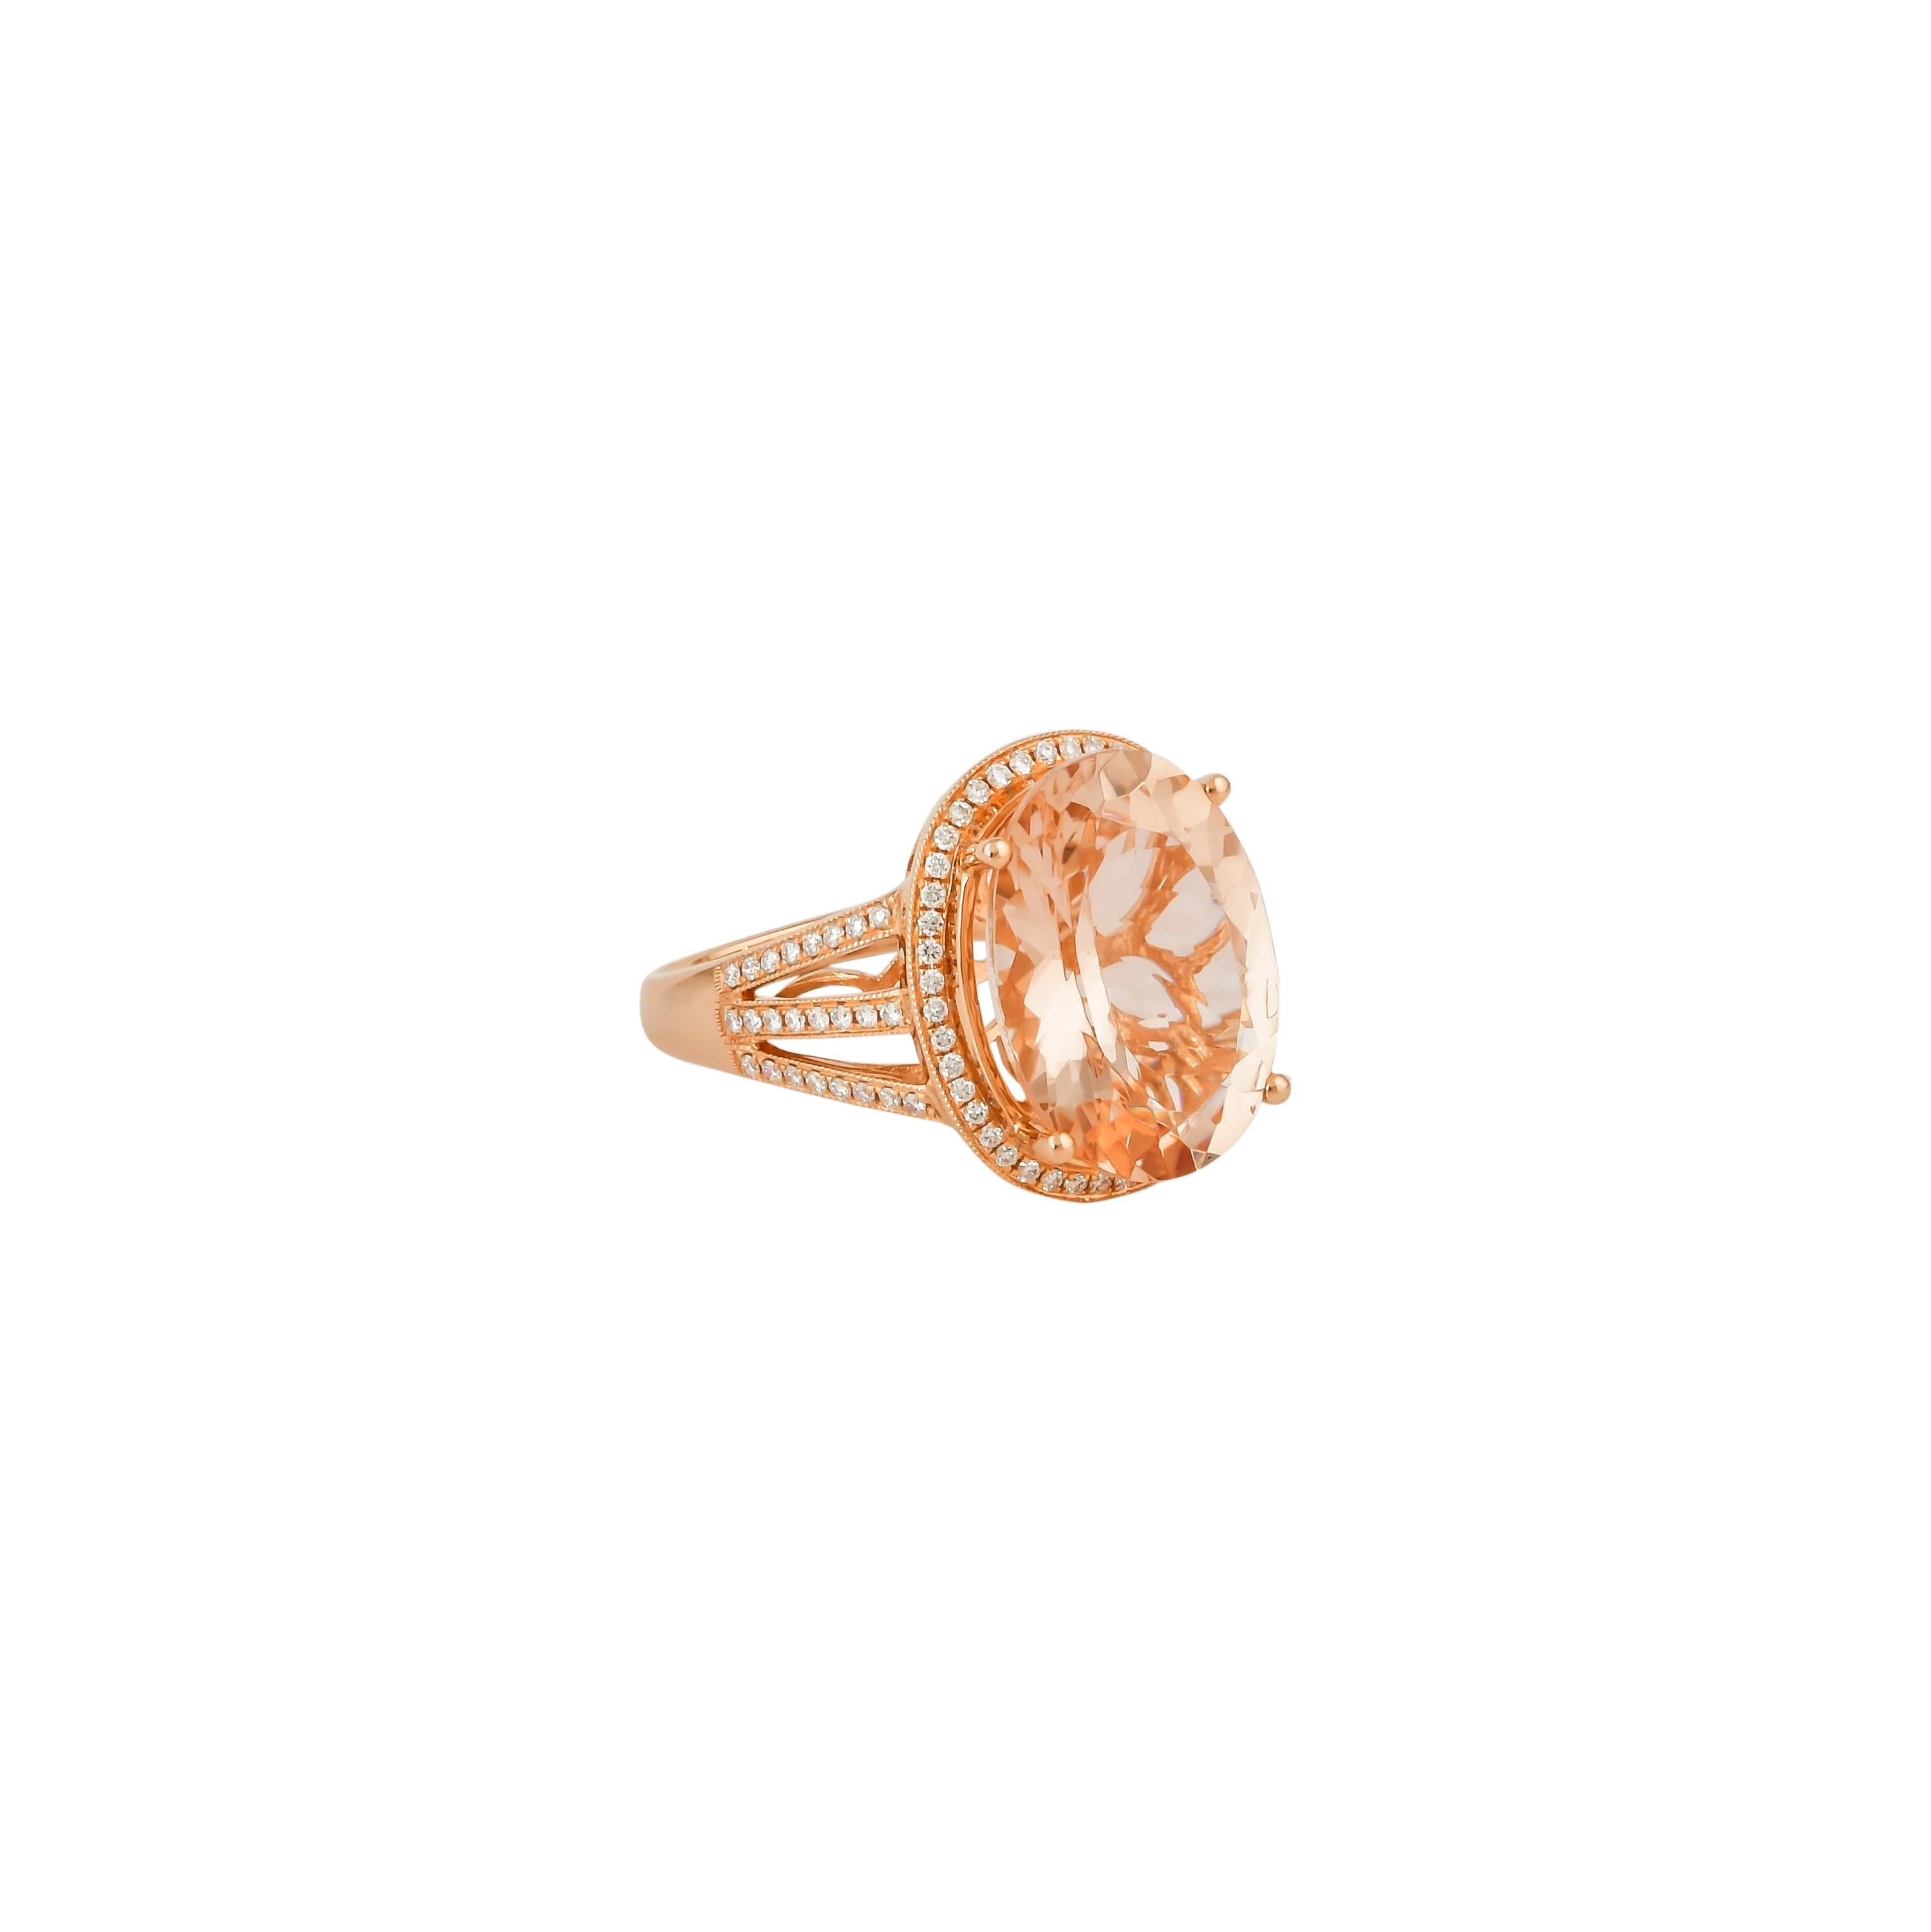 Diese Kollektion bietet eine Reihe von prächtigen Morganiten! Diese mit Diamanten besetzten Ringe sind aus Roségold gefertigt und wirken klassisch und elegant. 

Klassischer Morganit-Ring aus 18 Karat Roségold mit Diamanten. 

Morganit: 7,42 Karat